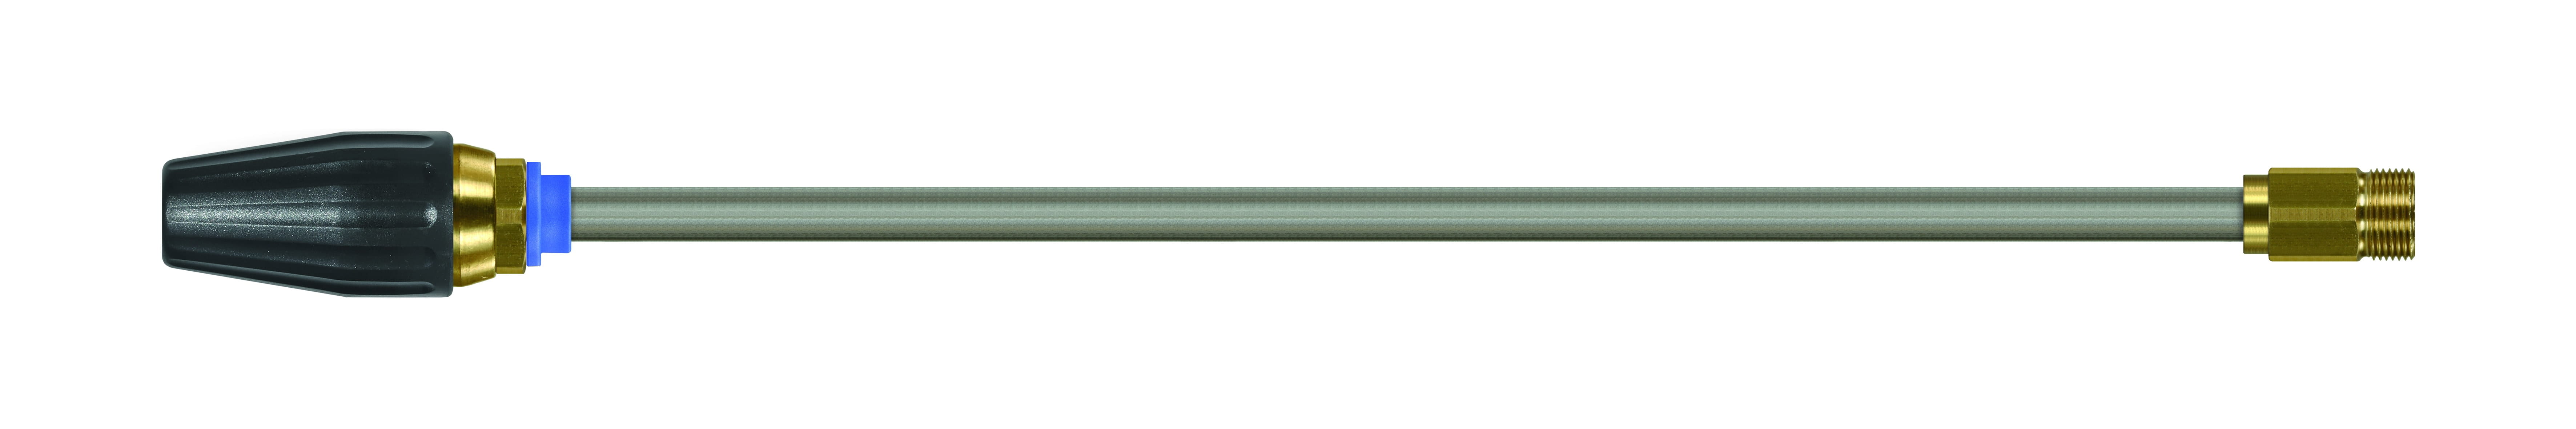 Грязевая фреза с трубкой 430 мм